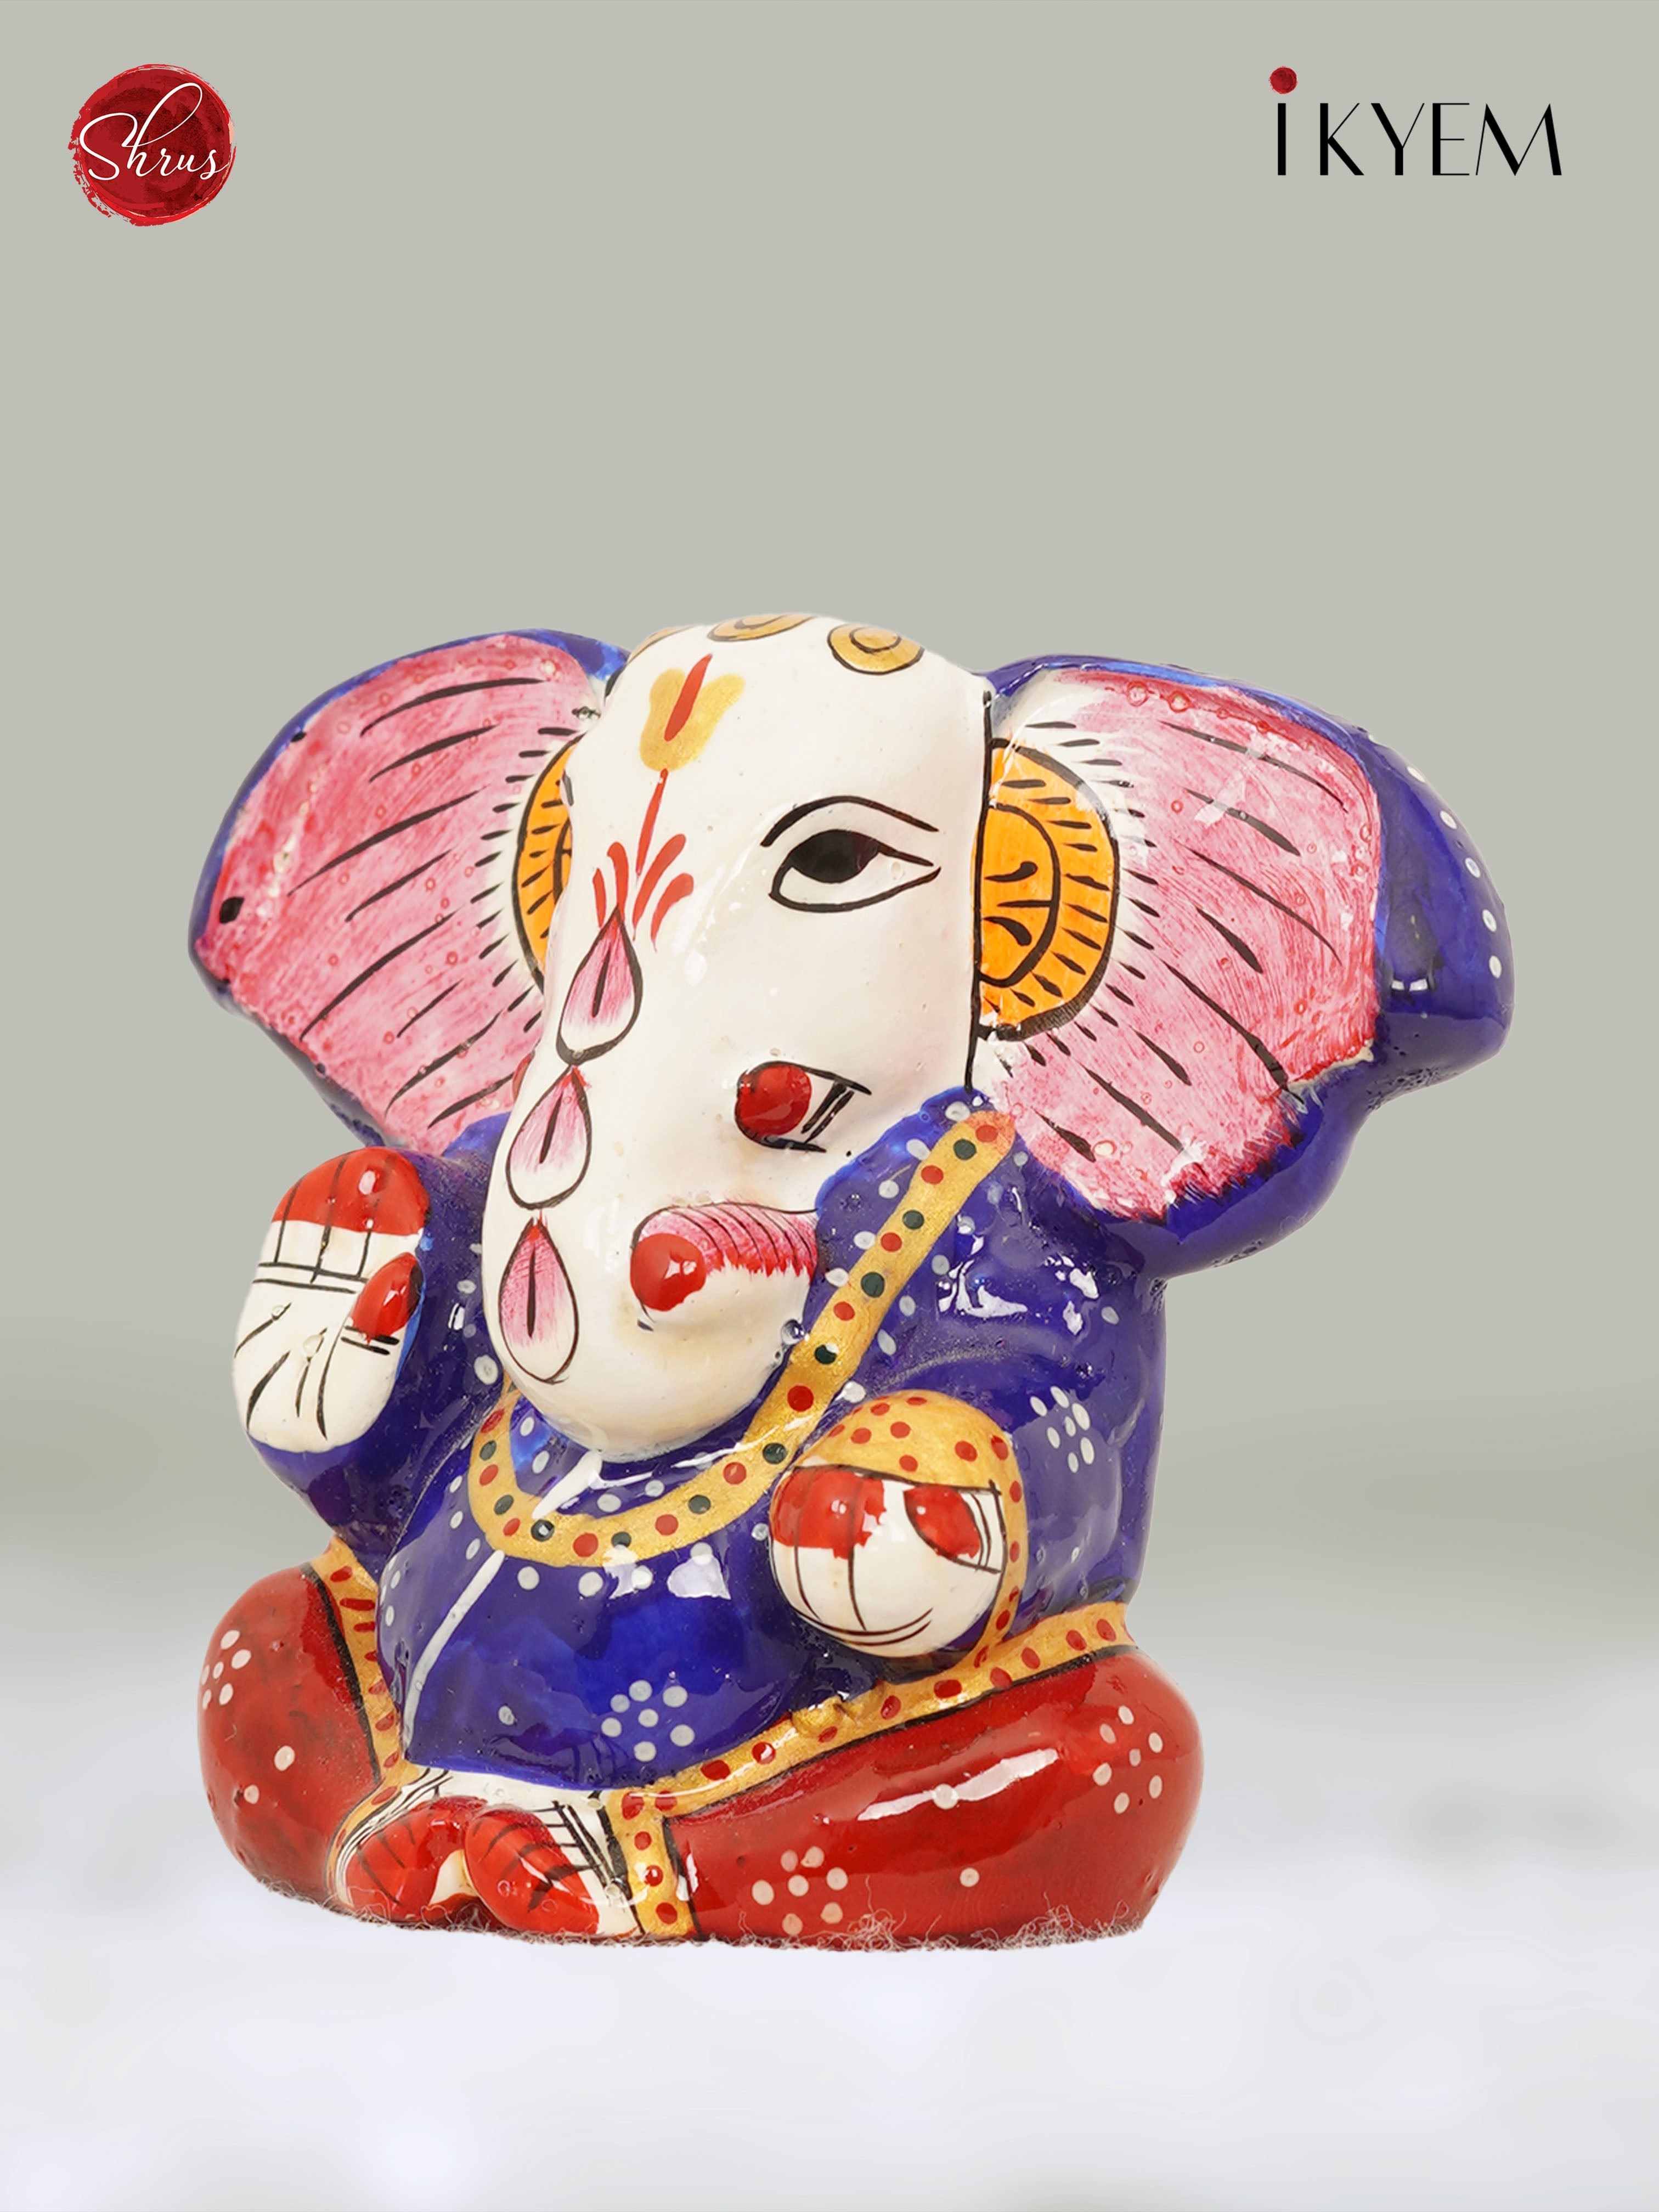 Lord Ganesha - Return Gift